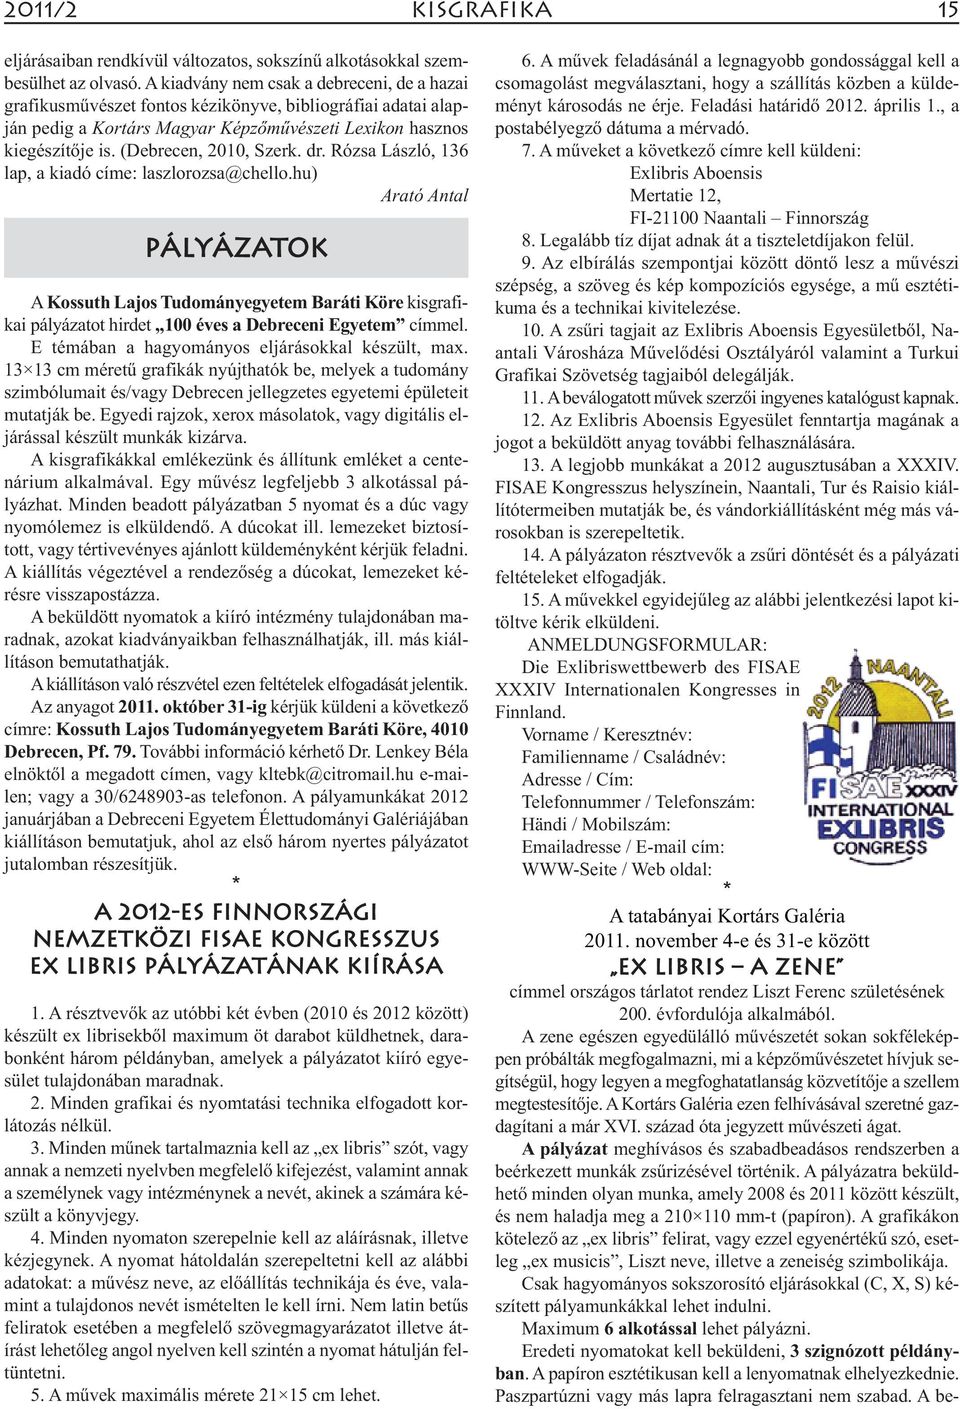 (Debrecen, 2010, Szerk. dr. Rózsa László, 136 lap, a kiadó címe: laszlorozsa@chello.